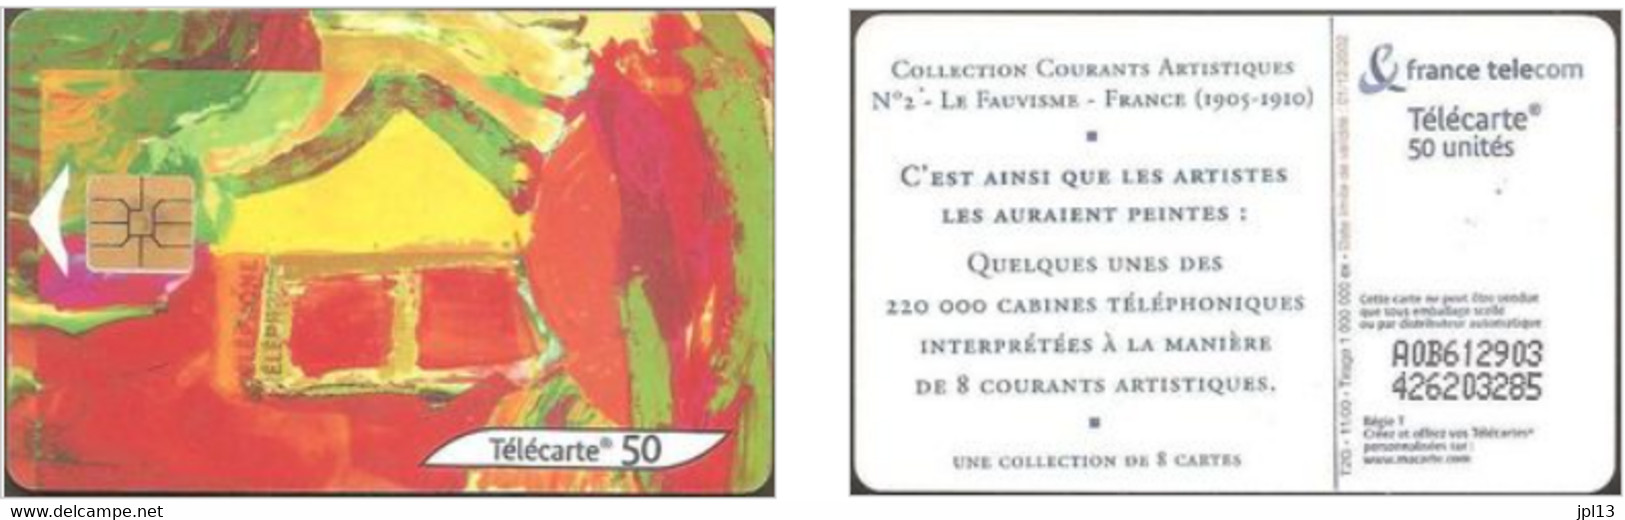 Télécarte à Puce - France - France Télécom - Coll. Courants Artistiq. N. 2 - Le Fauvisme - 2000